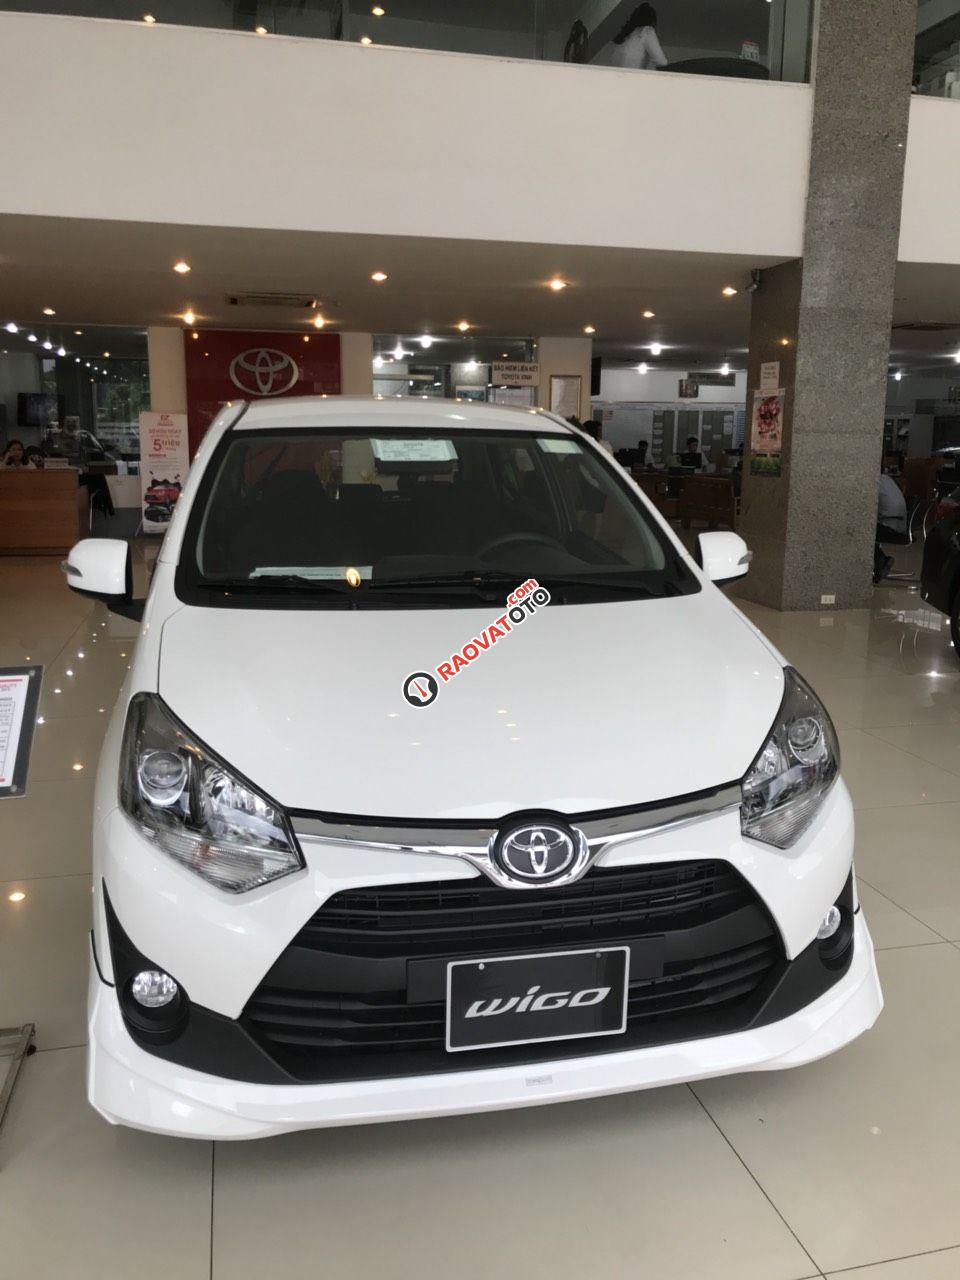 Toyota Vinh-Nghệ An-Hotline: 0904.72.52.66 bán xe Wigo tự động giá rẻ nhất Nghệ An, trả góp lãi suất từ 0%-0